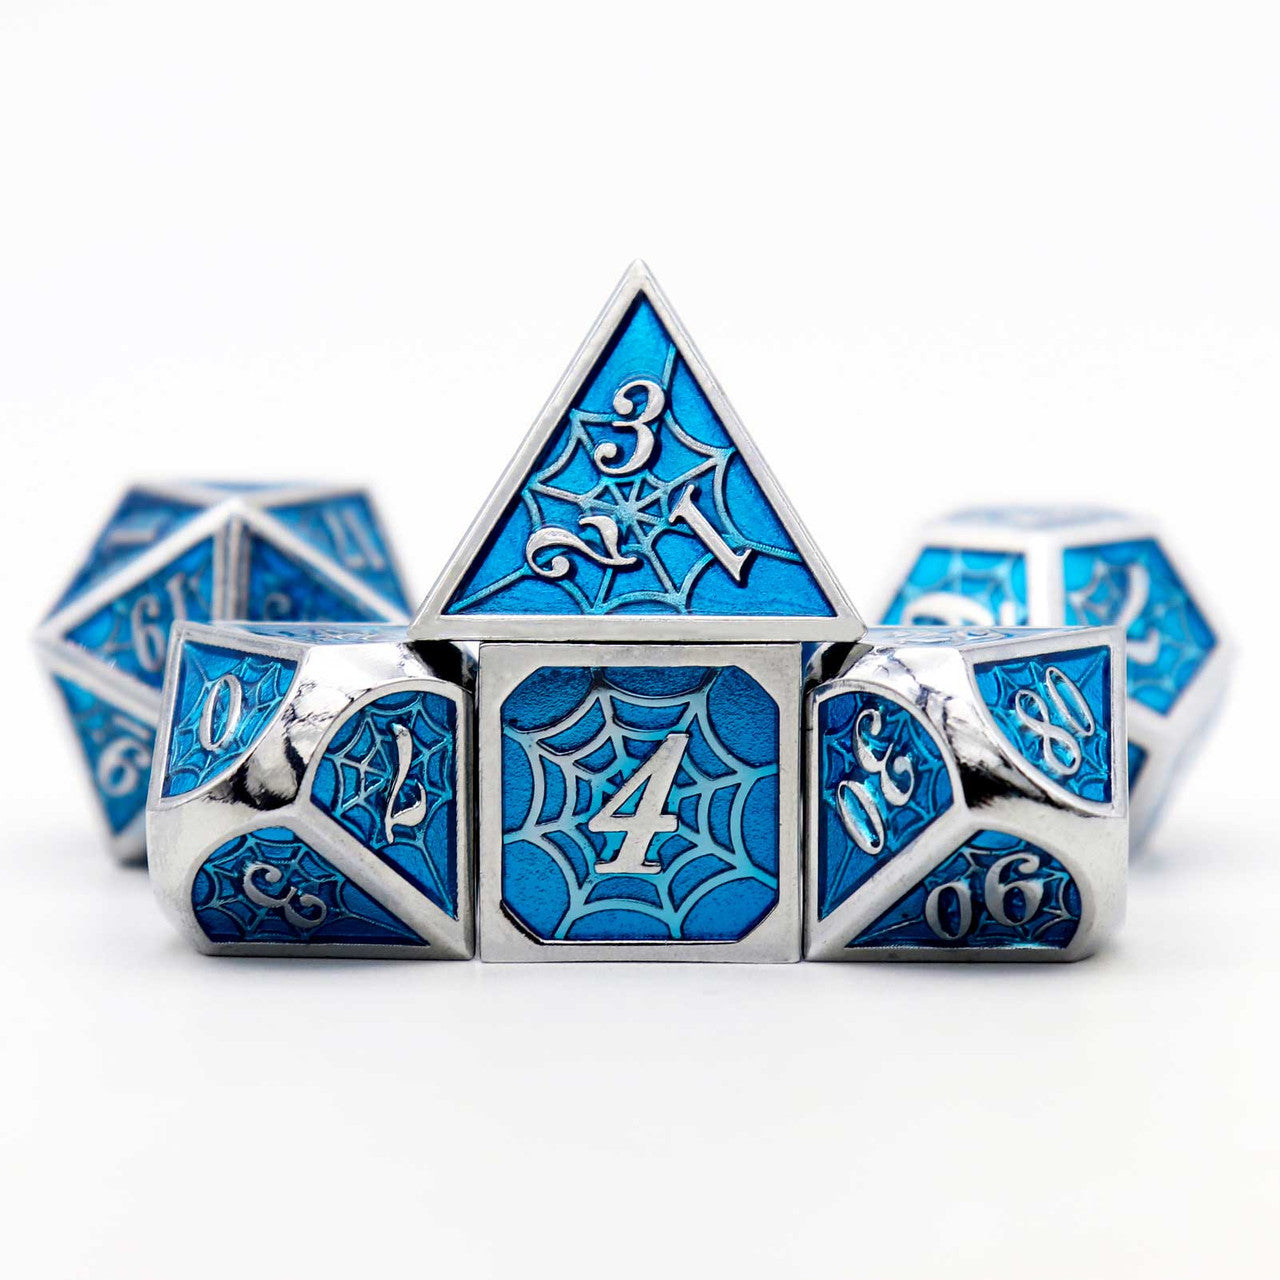 haxtec dice, blue dice, metal dice blue, dnd dice, the net dice, net dice, silver blue dice, silver metal dice